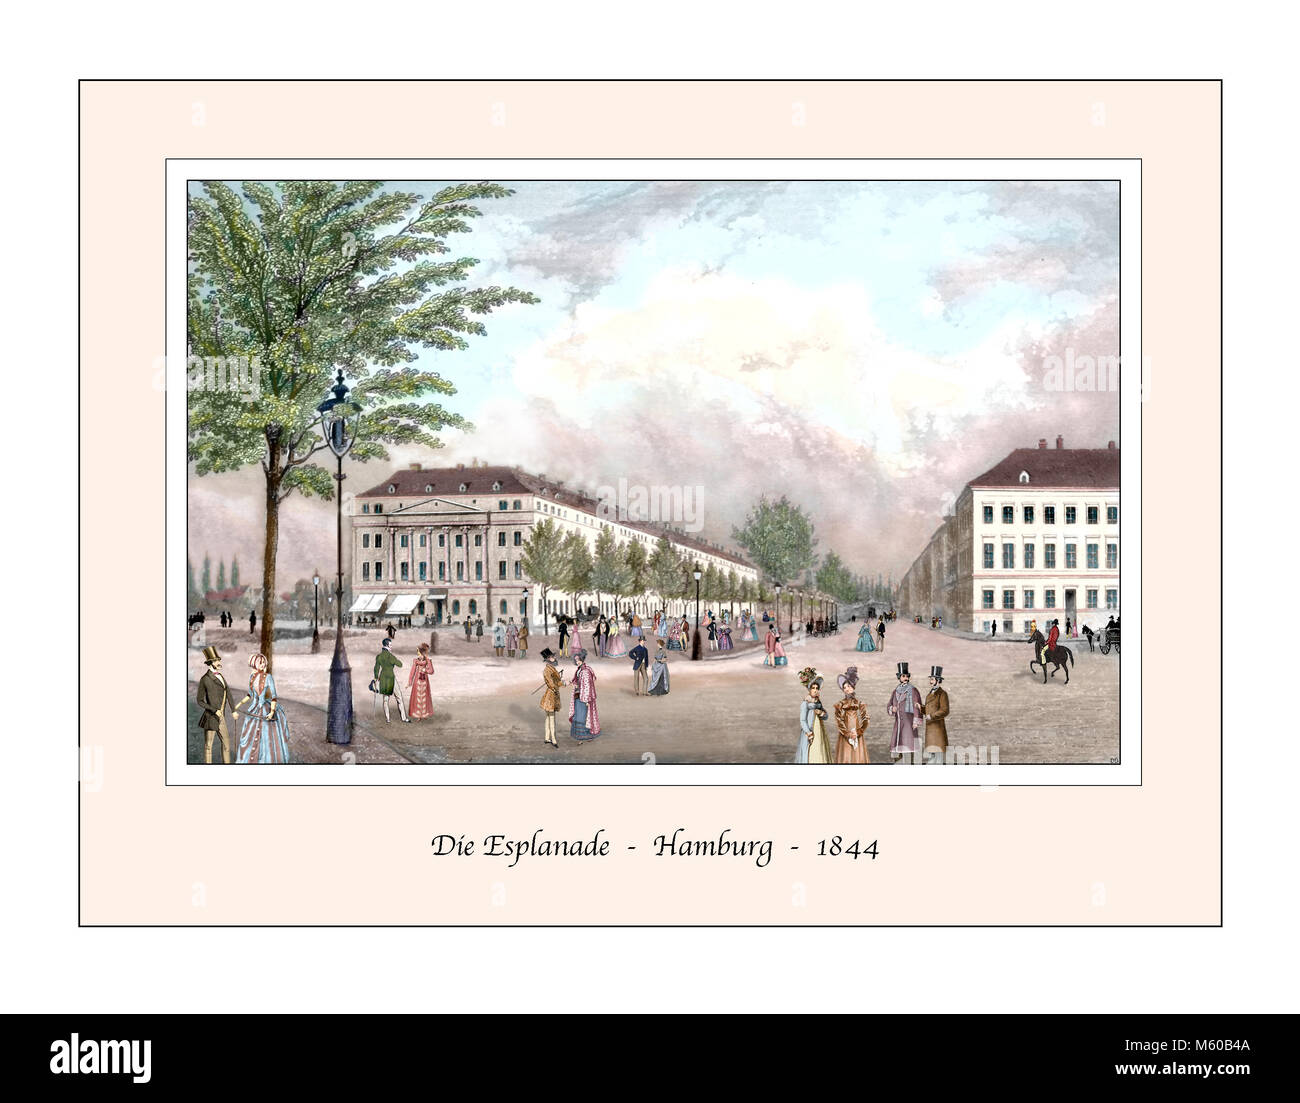 Esplanade Hambourg design original à partir d'une gravure du xixe siècle Banque D'Images